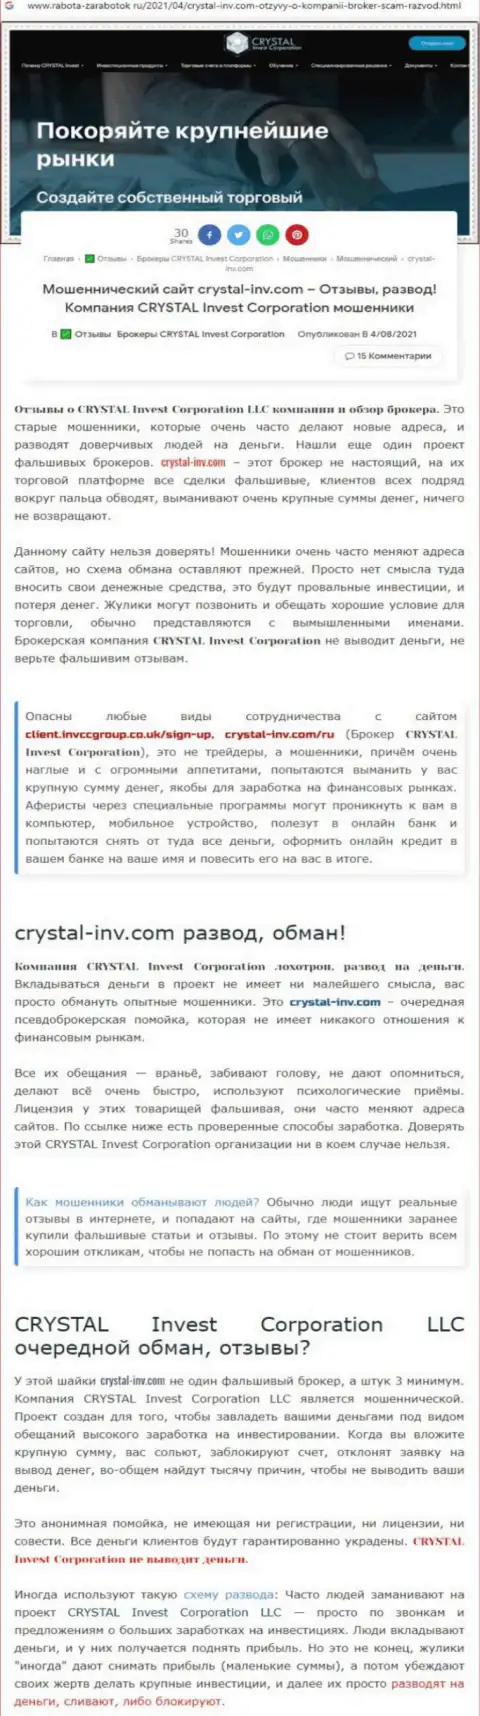 Материал, выводящий на чистую воду контору Crystal-Inv Com, взятый с веб-портала с обзорами различных организаций